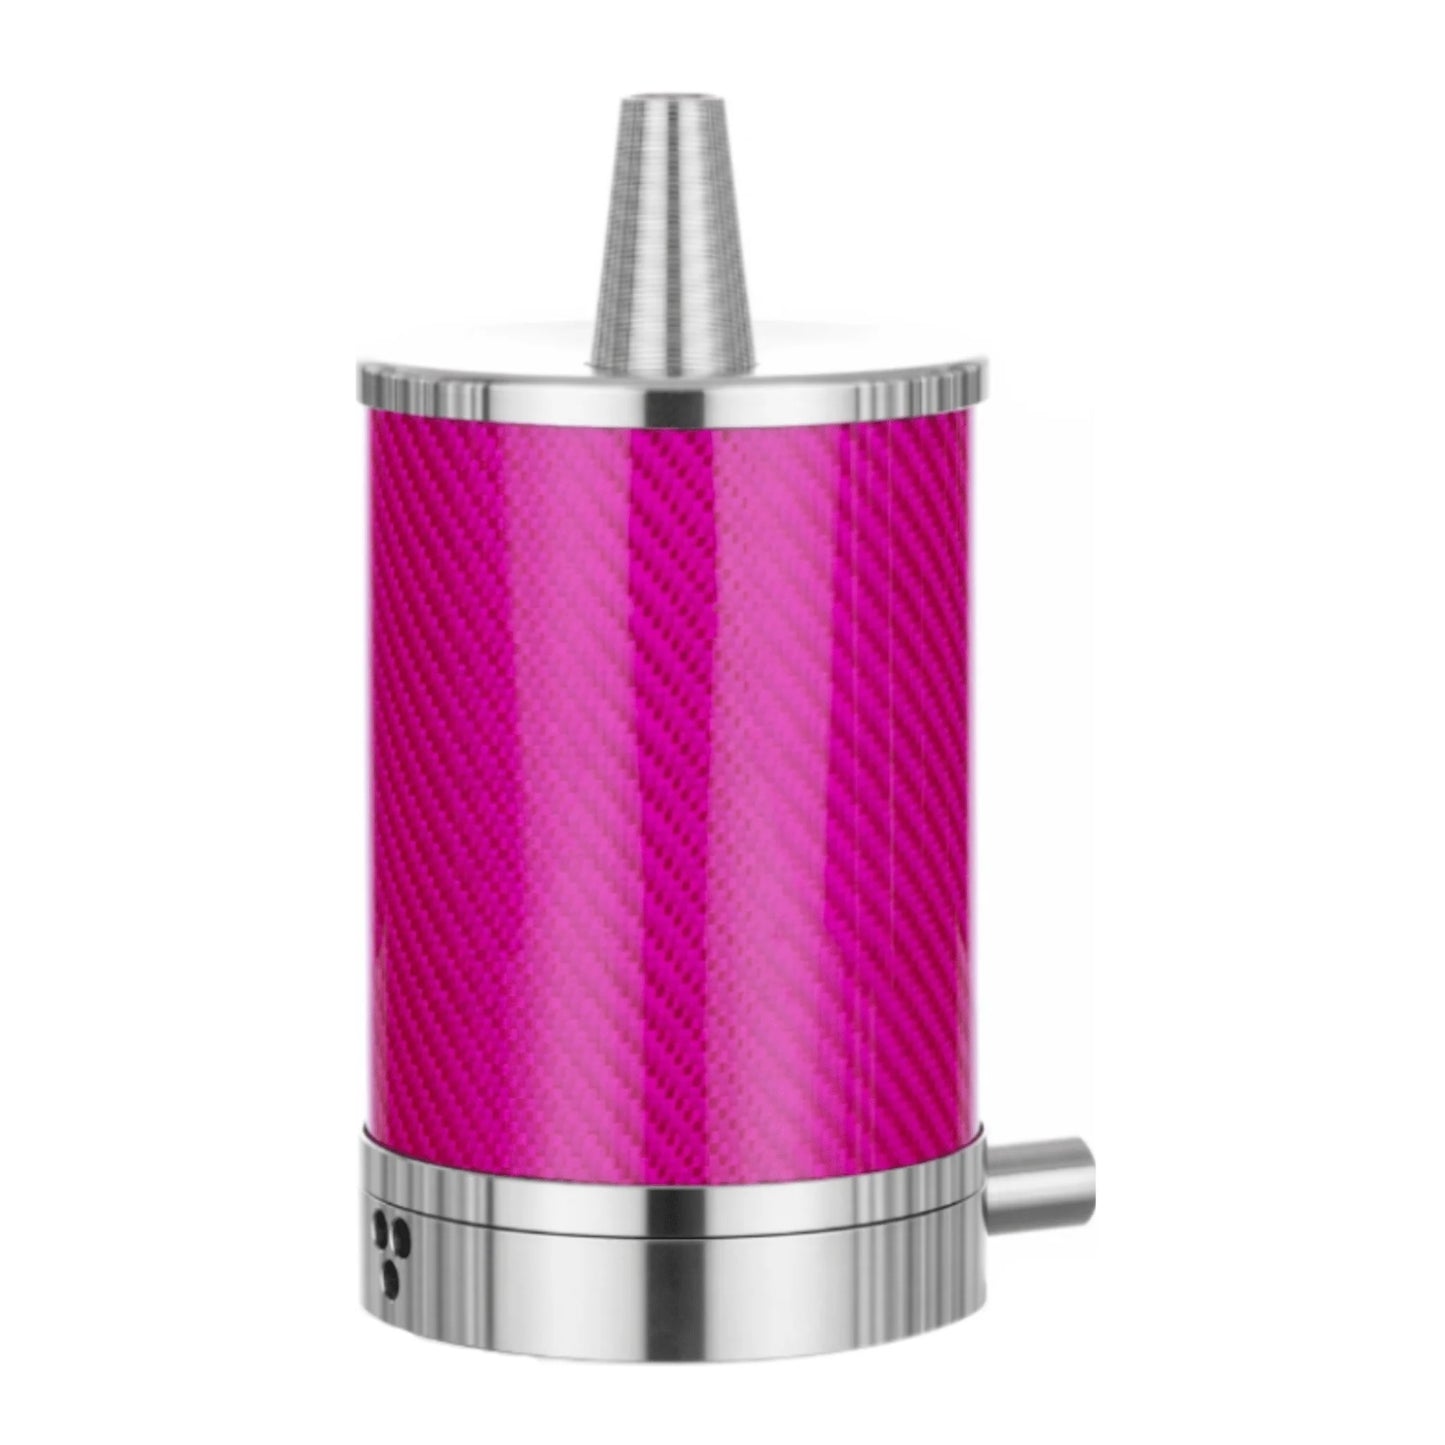 vyro-one-vyro-carbon-pink-crown-hookah-726758